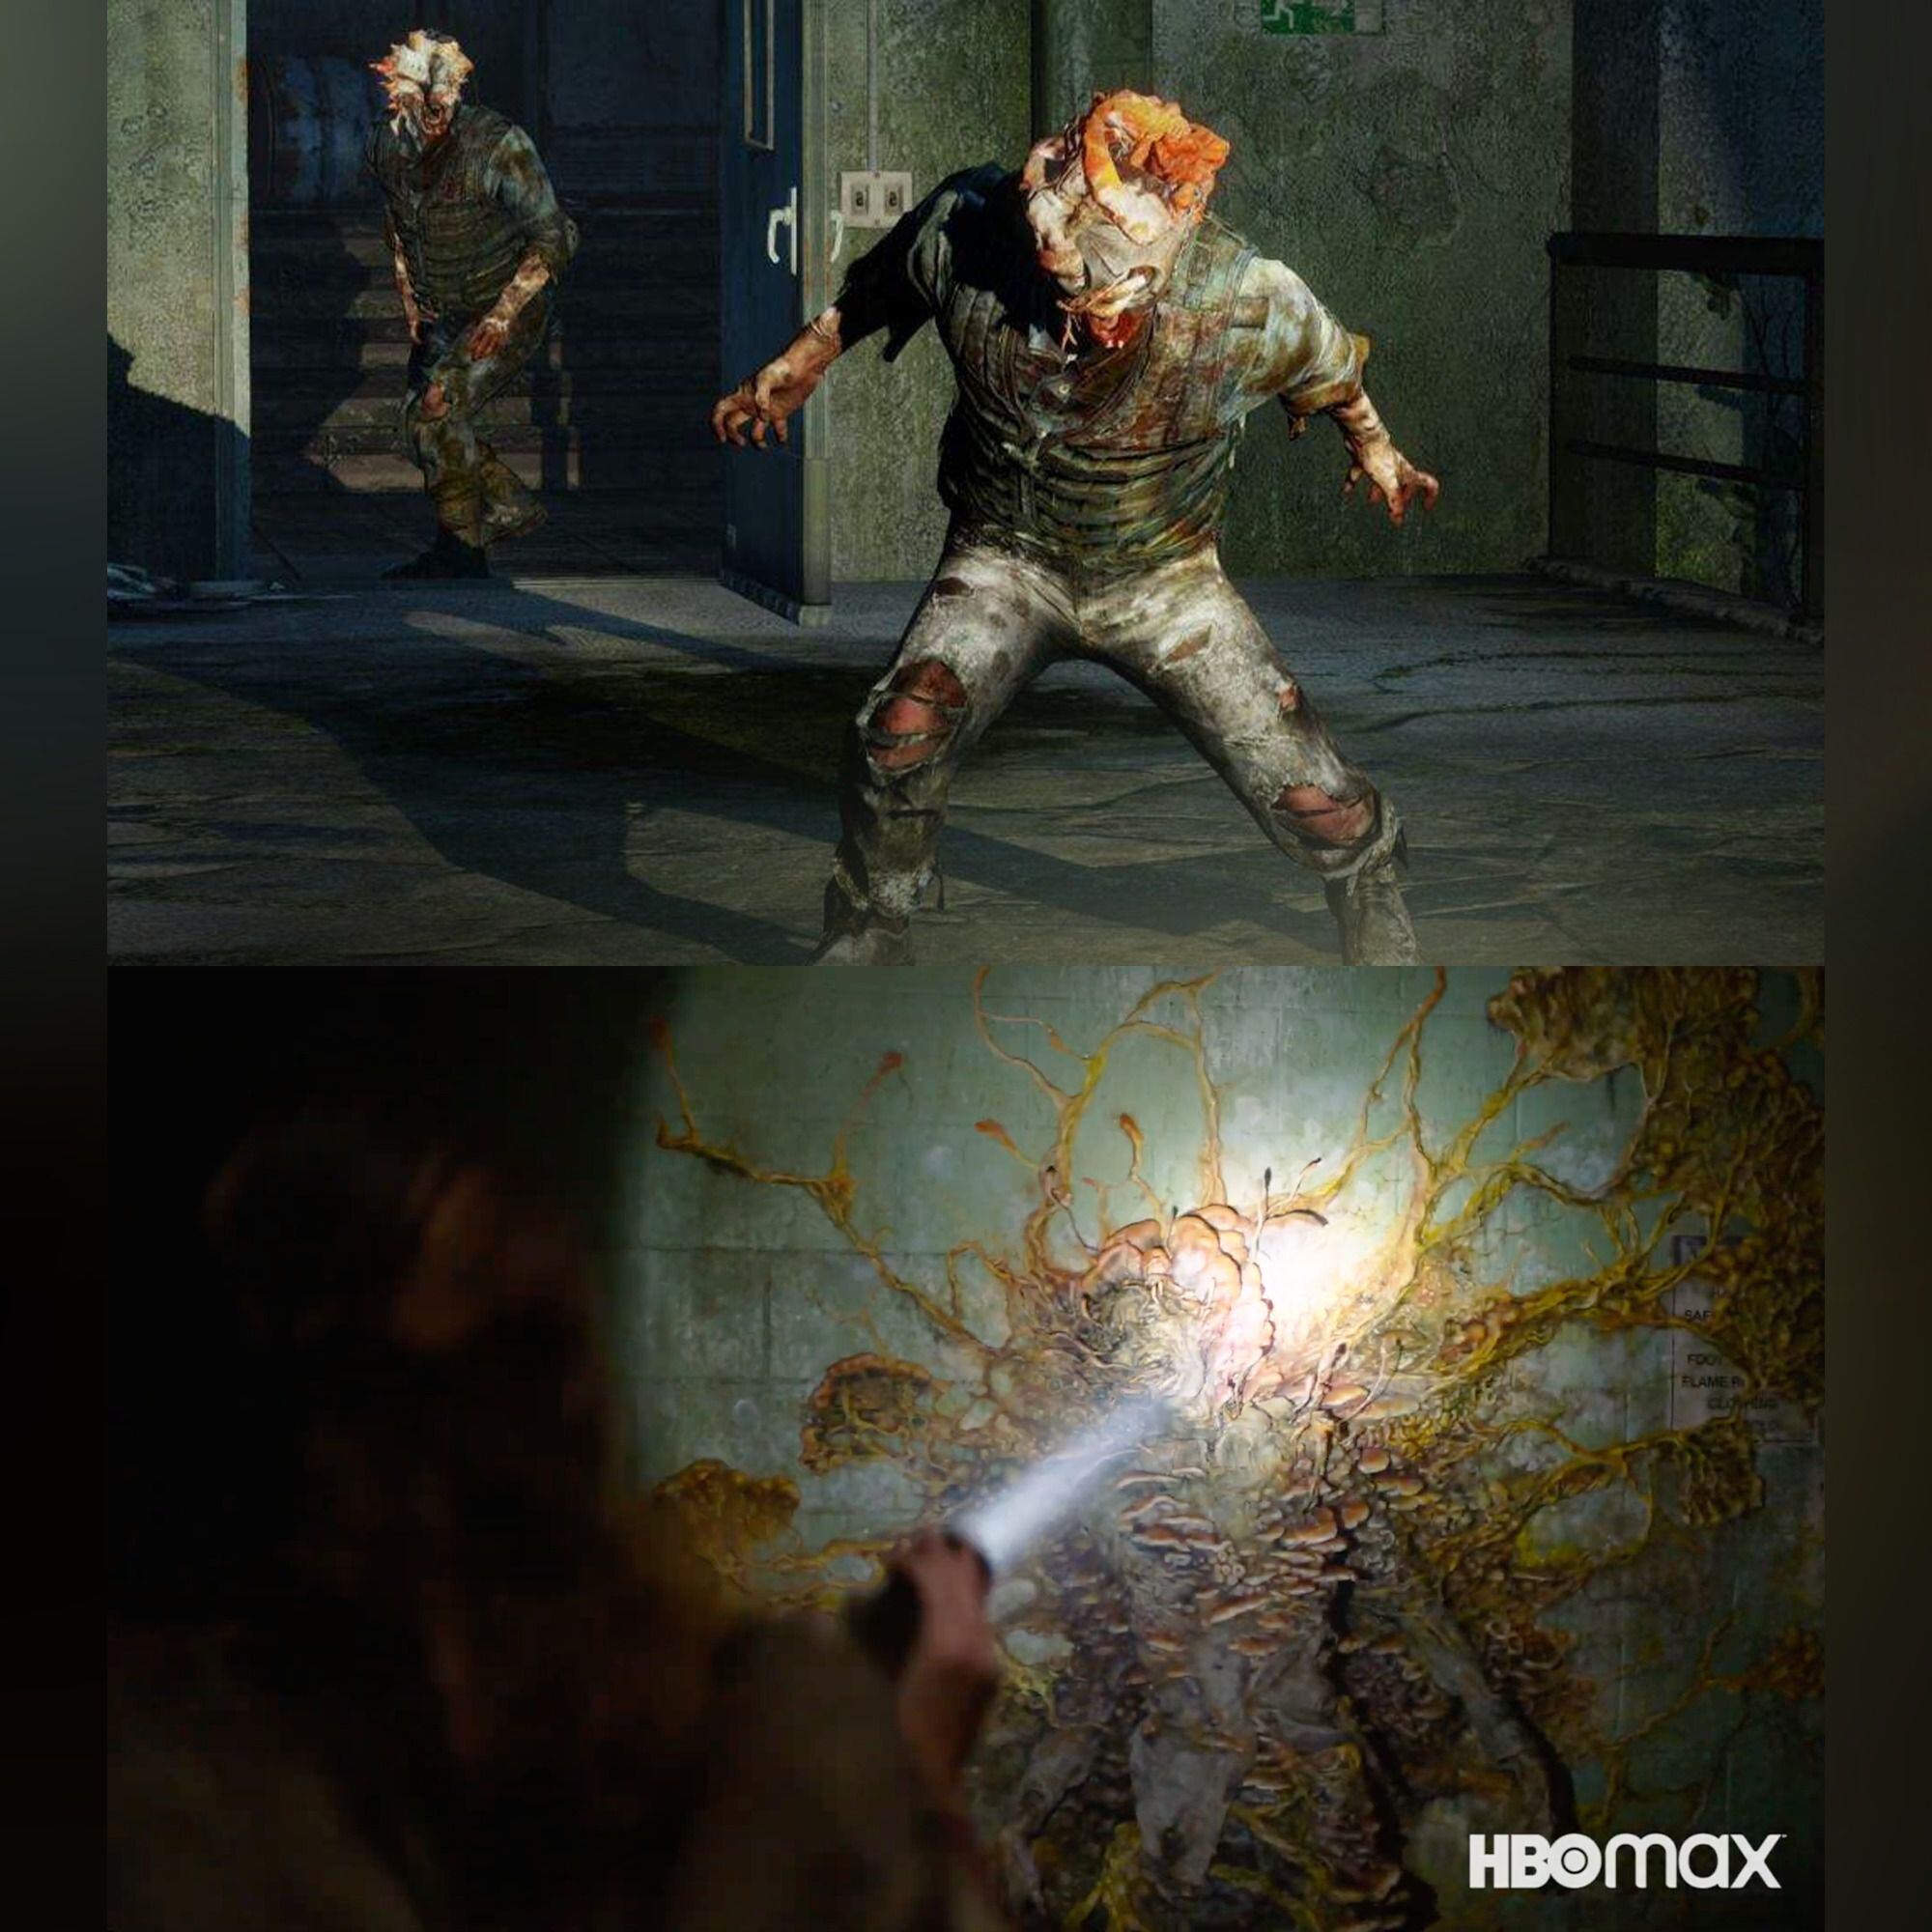 Los chasqueadores son un tipo de mutantes que aparece en el universo de 'The Last Of Us'. En el videojuego solo pueden ser derribados con cuchillas y no con golpes. Foto: HBO